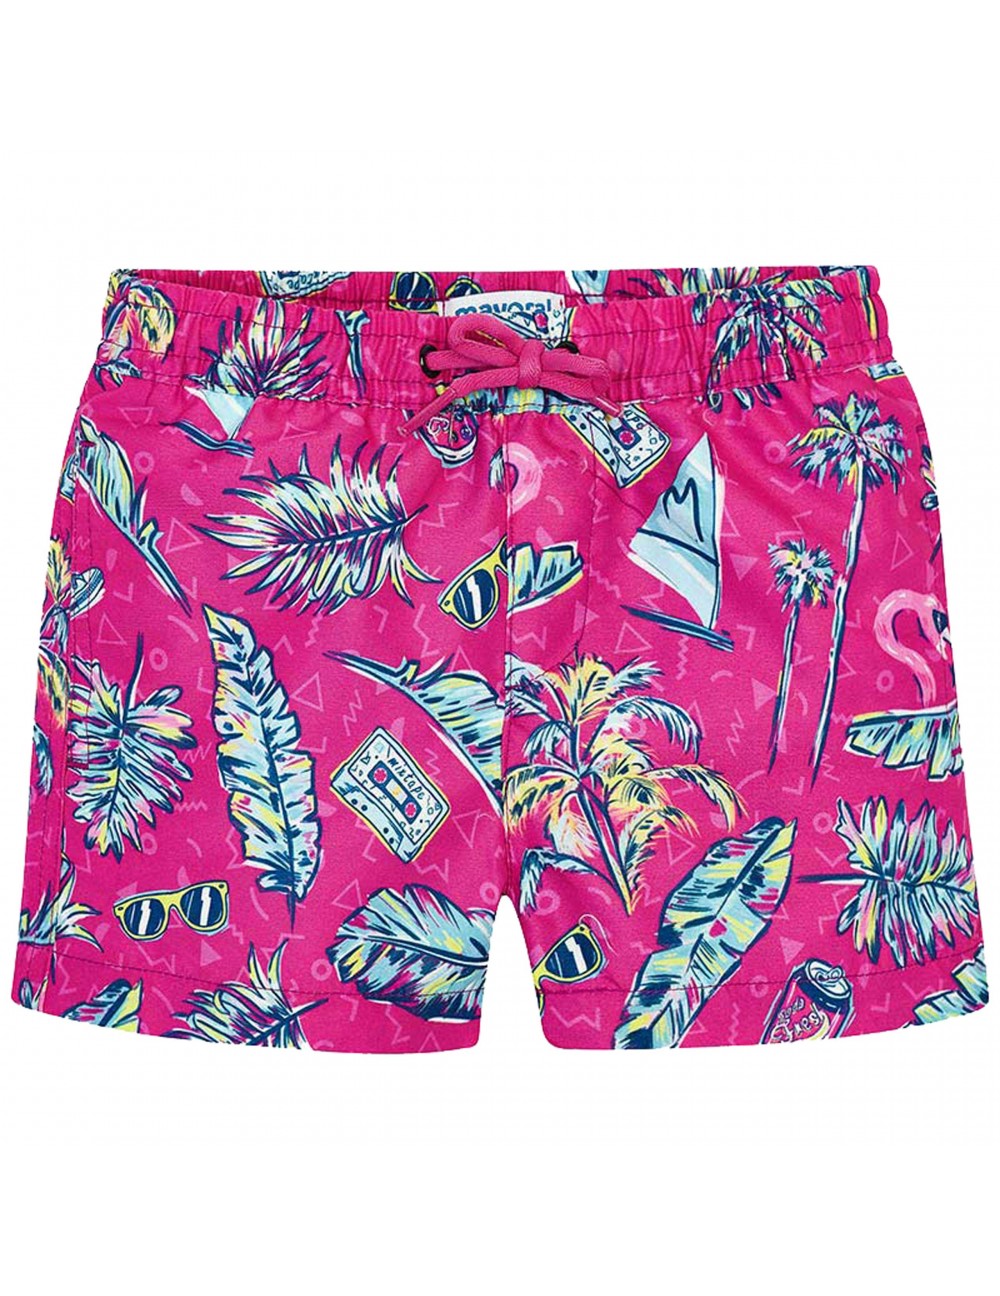 Printed boys swim short Color Pink Size 4y